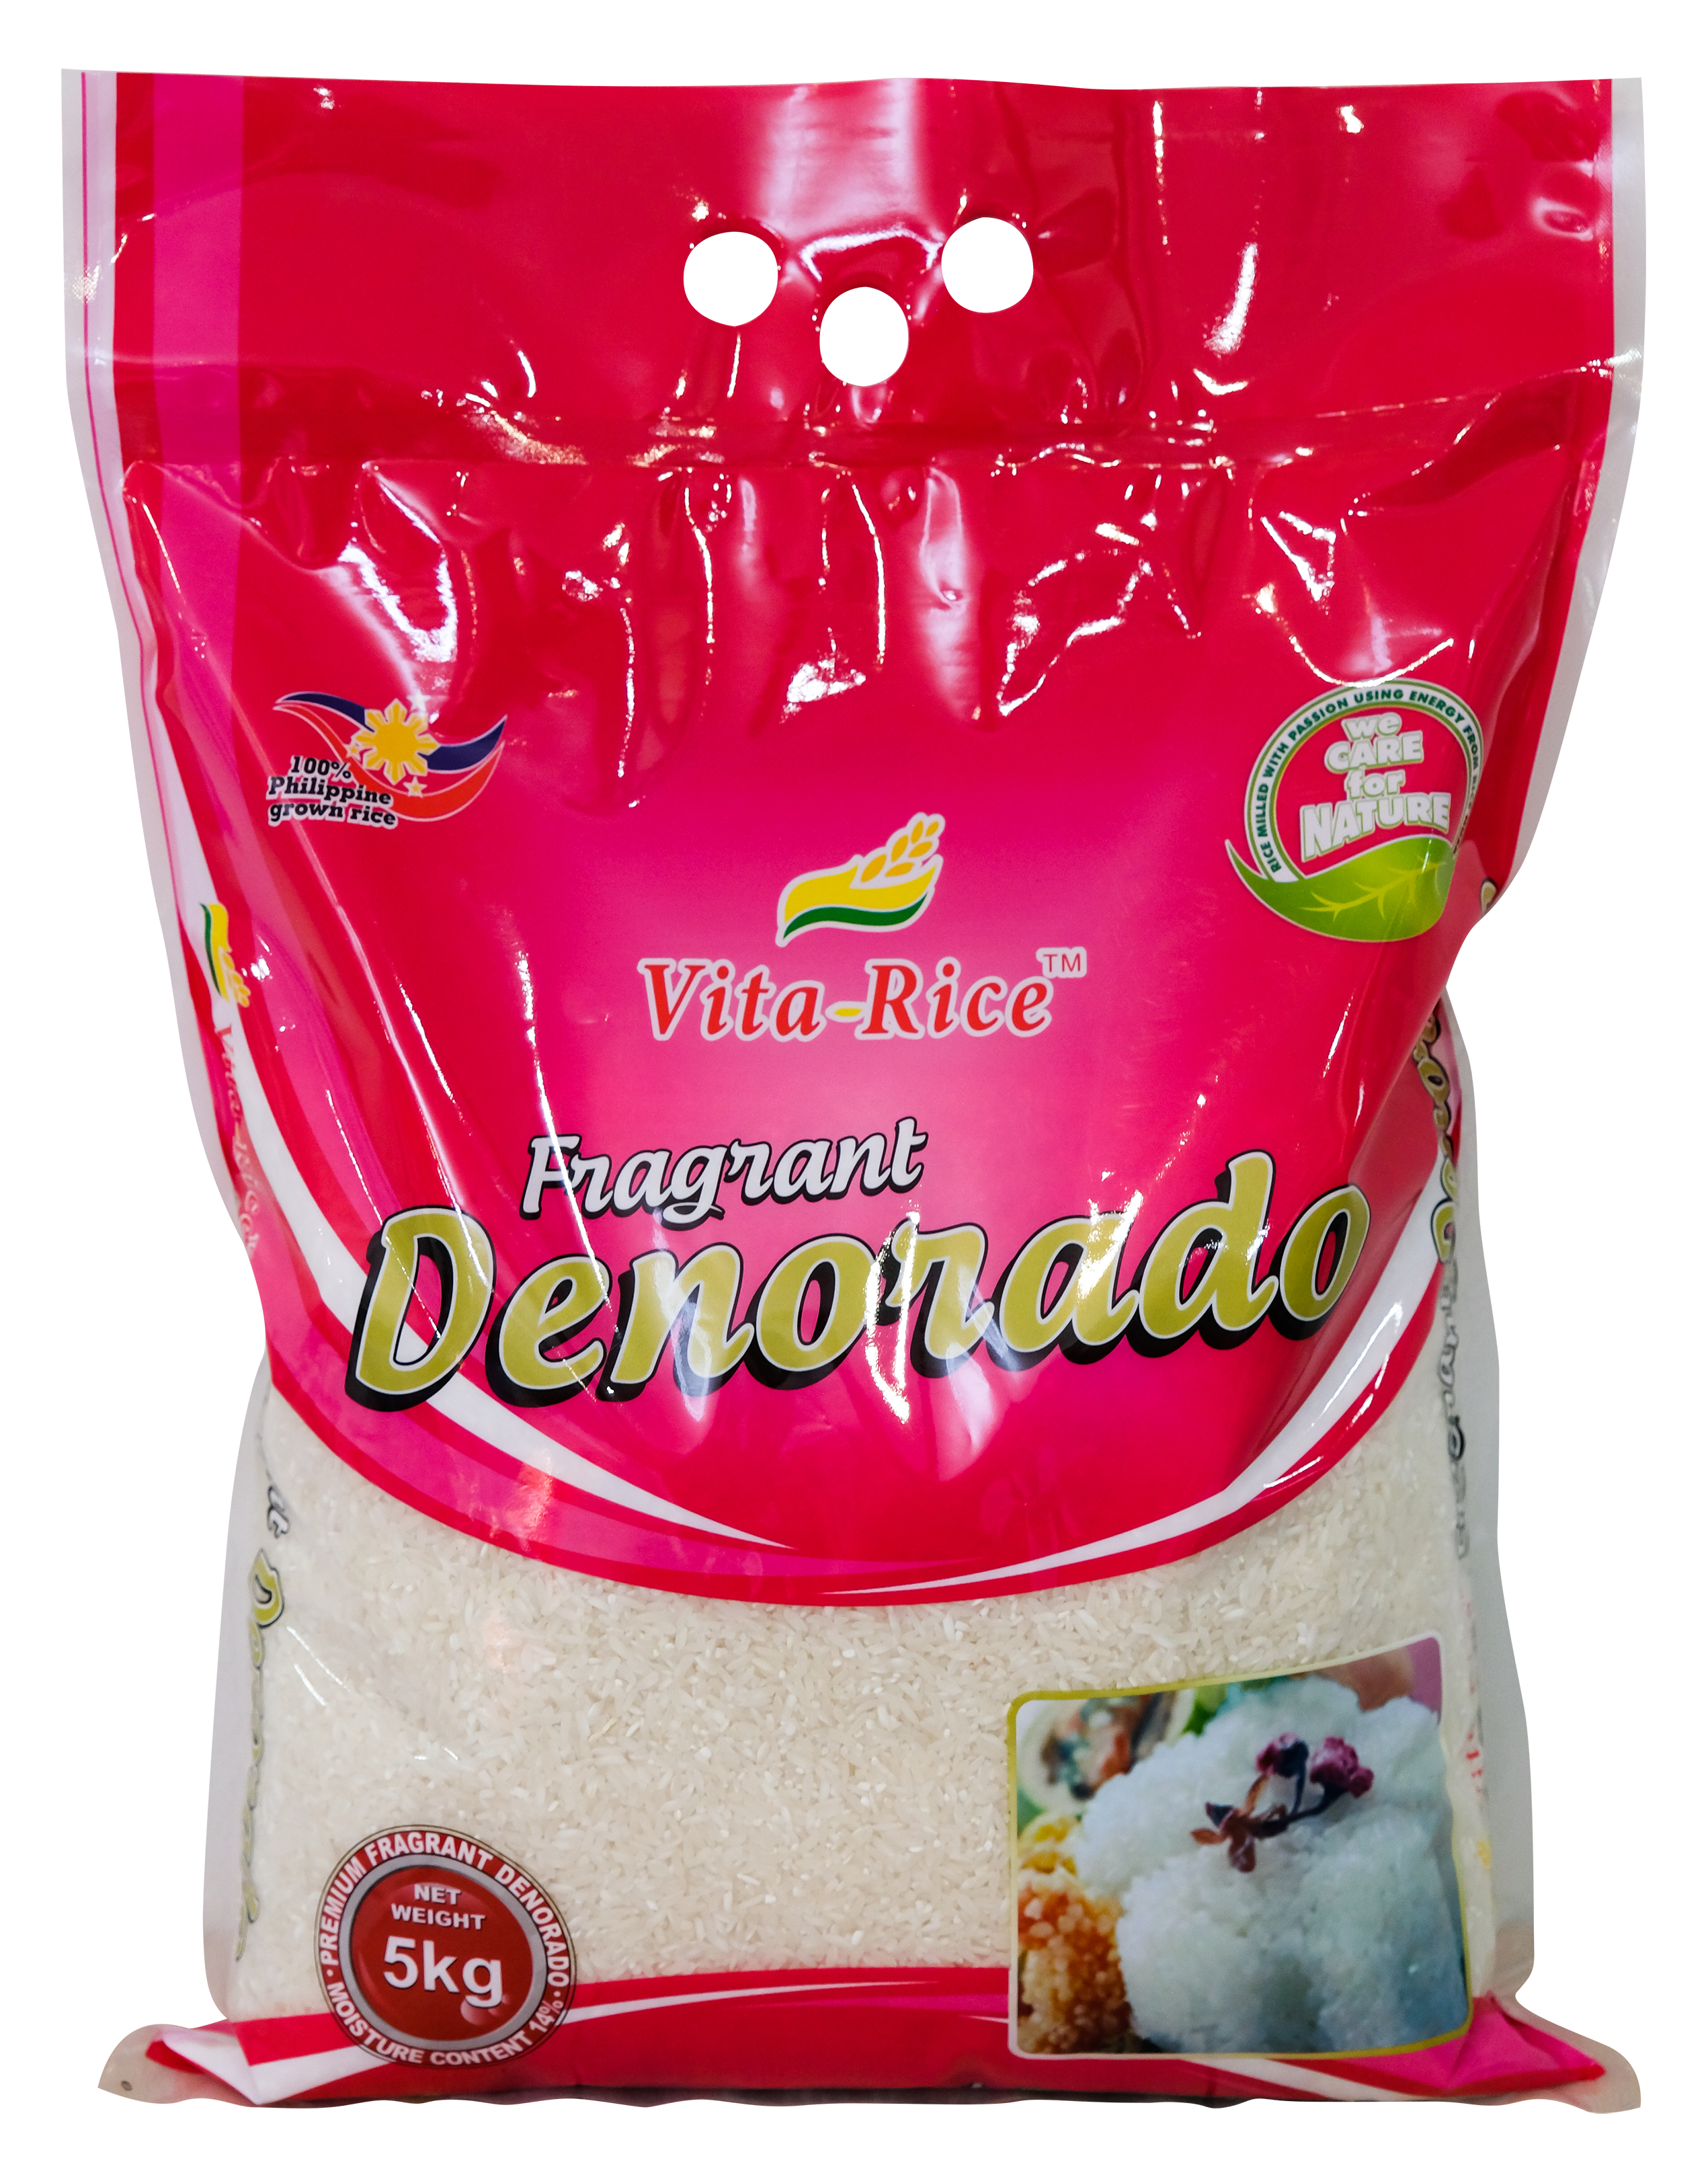 Vita-Rice Fragrant Denorado